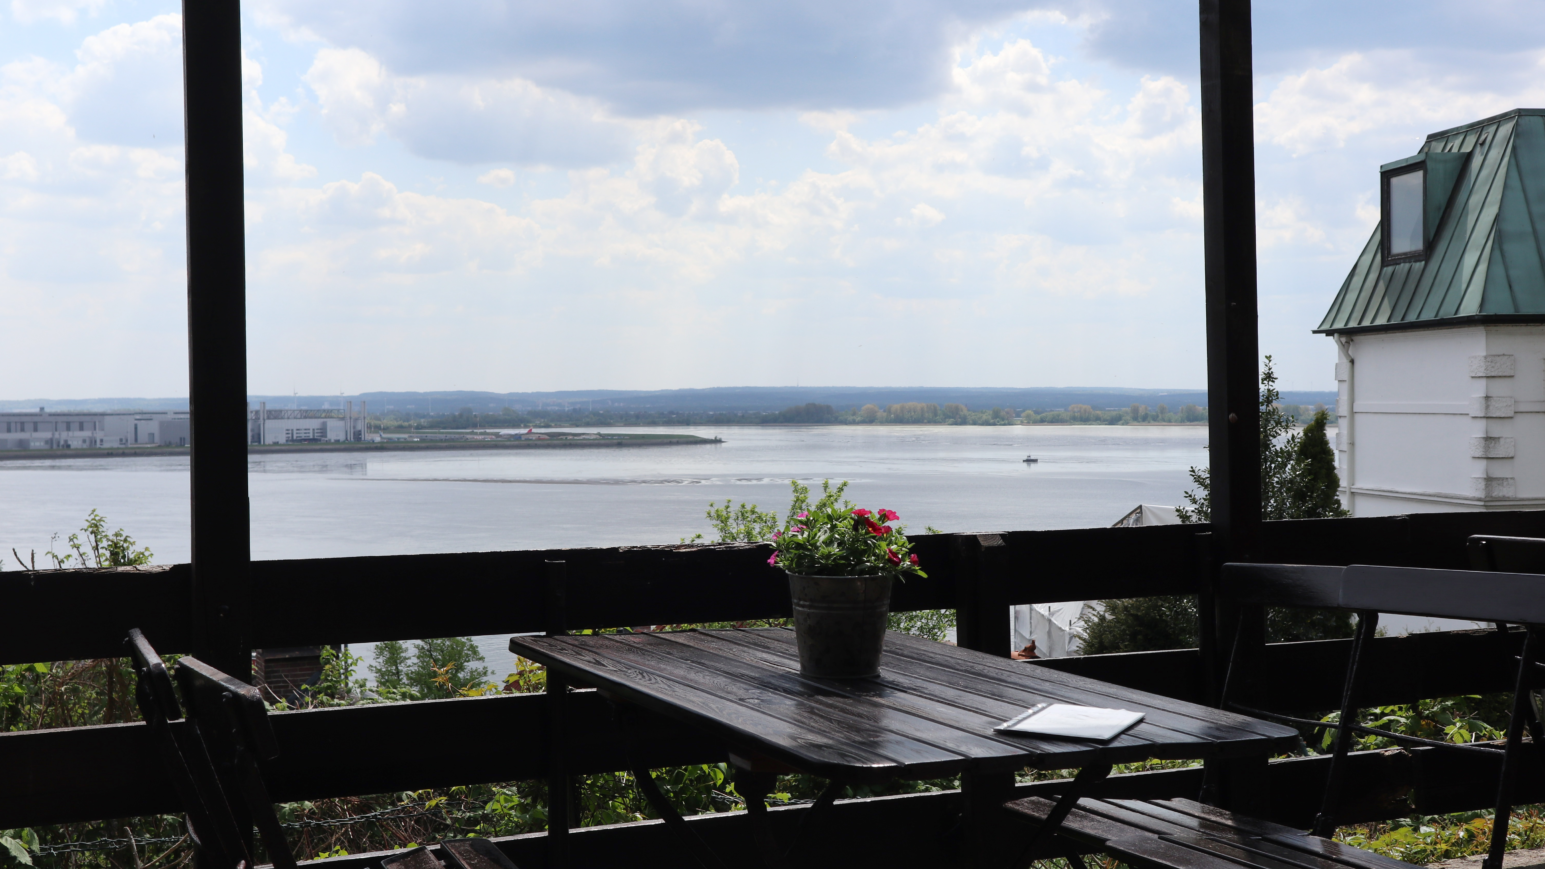 Geht durchaus unromantischer: Blick aus dem Kaffeegarten Schuldt auf die Elbe (©Tom Lienekampf)